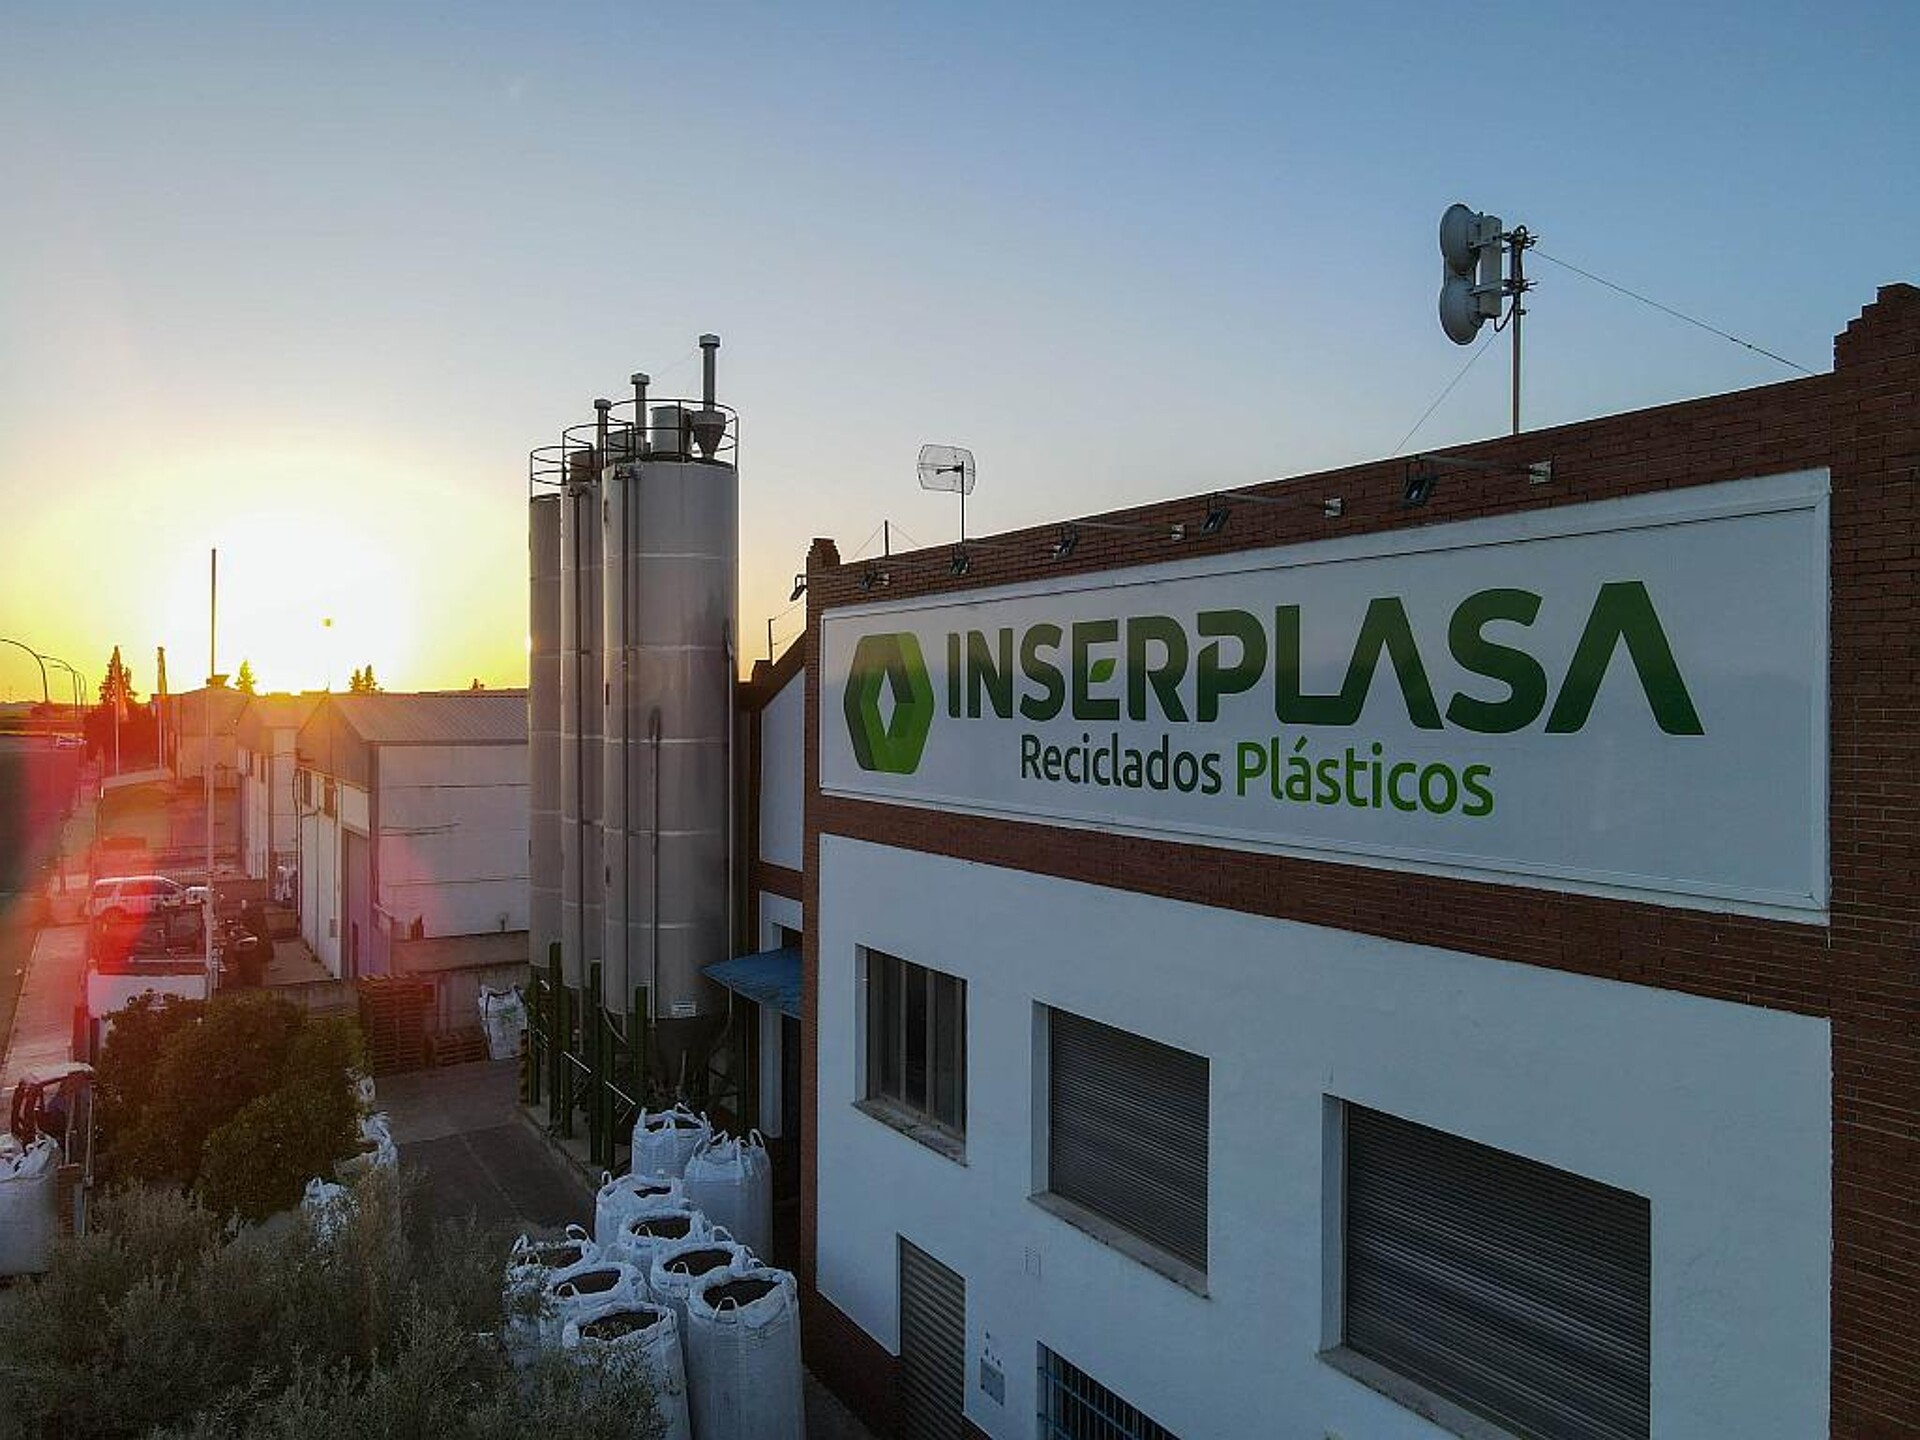 Inserplasa wurde von zwei Jugendfreunden gegründet und steht heute für innovatives Kunststoffrecycling in Spanien. (Foto: Steinert)